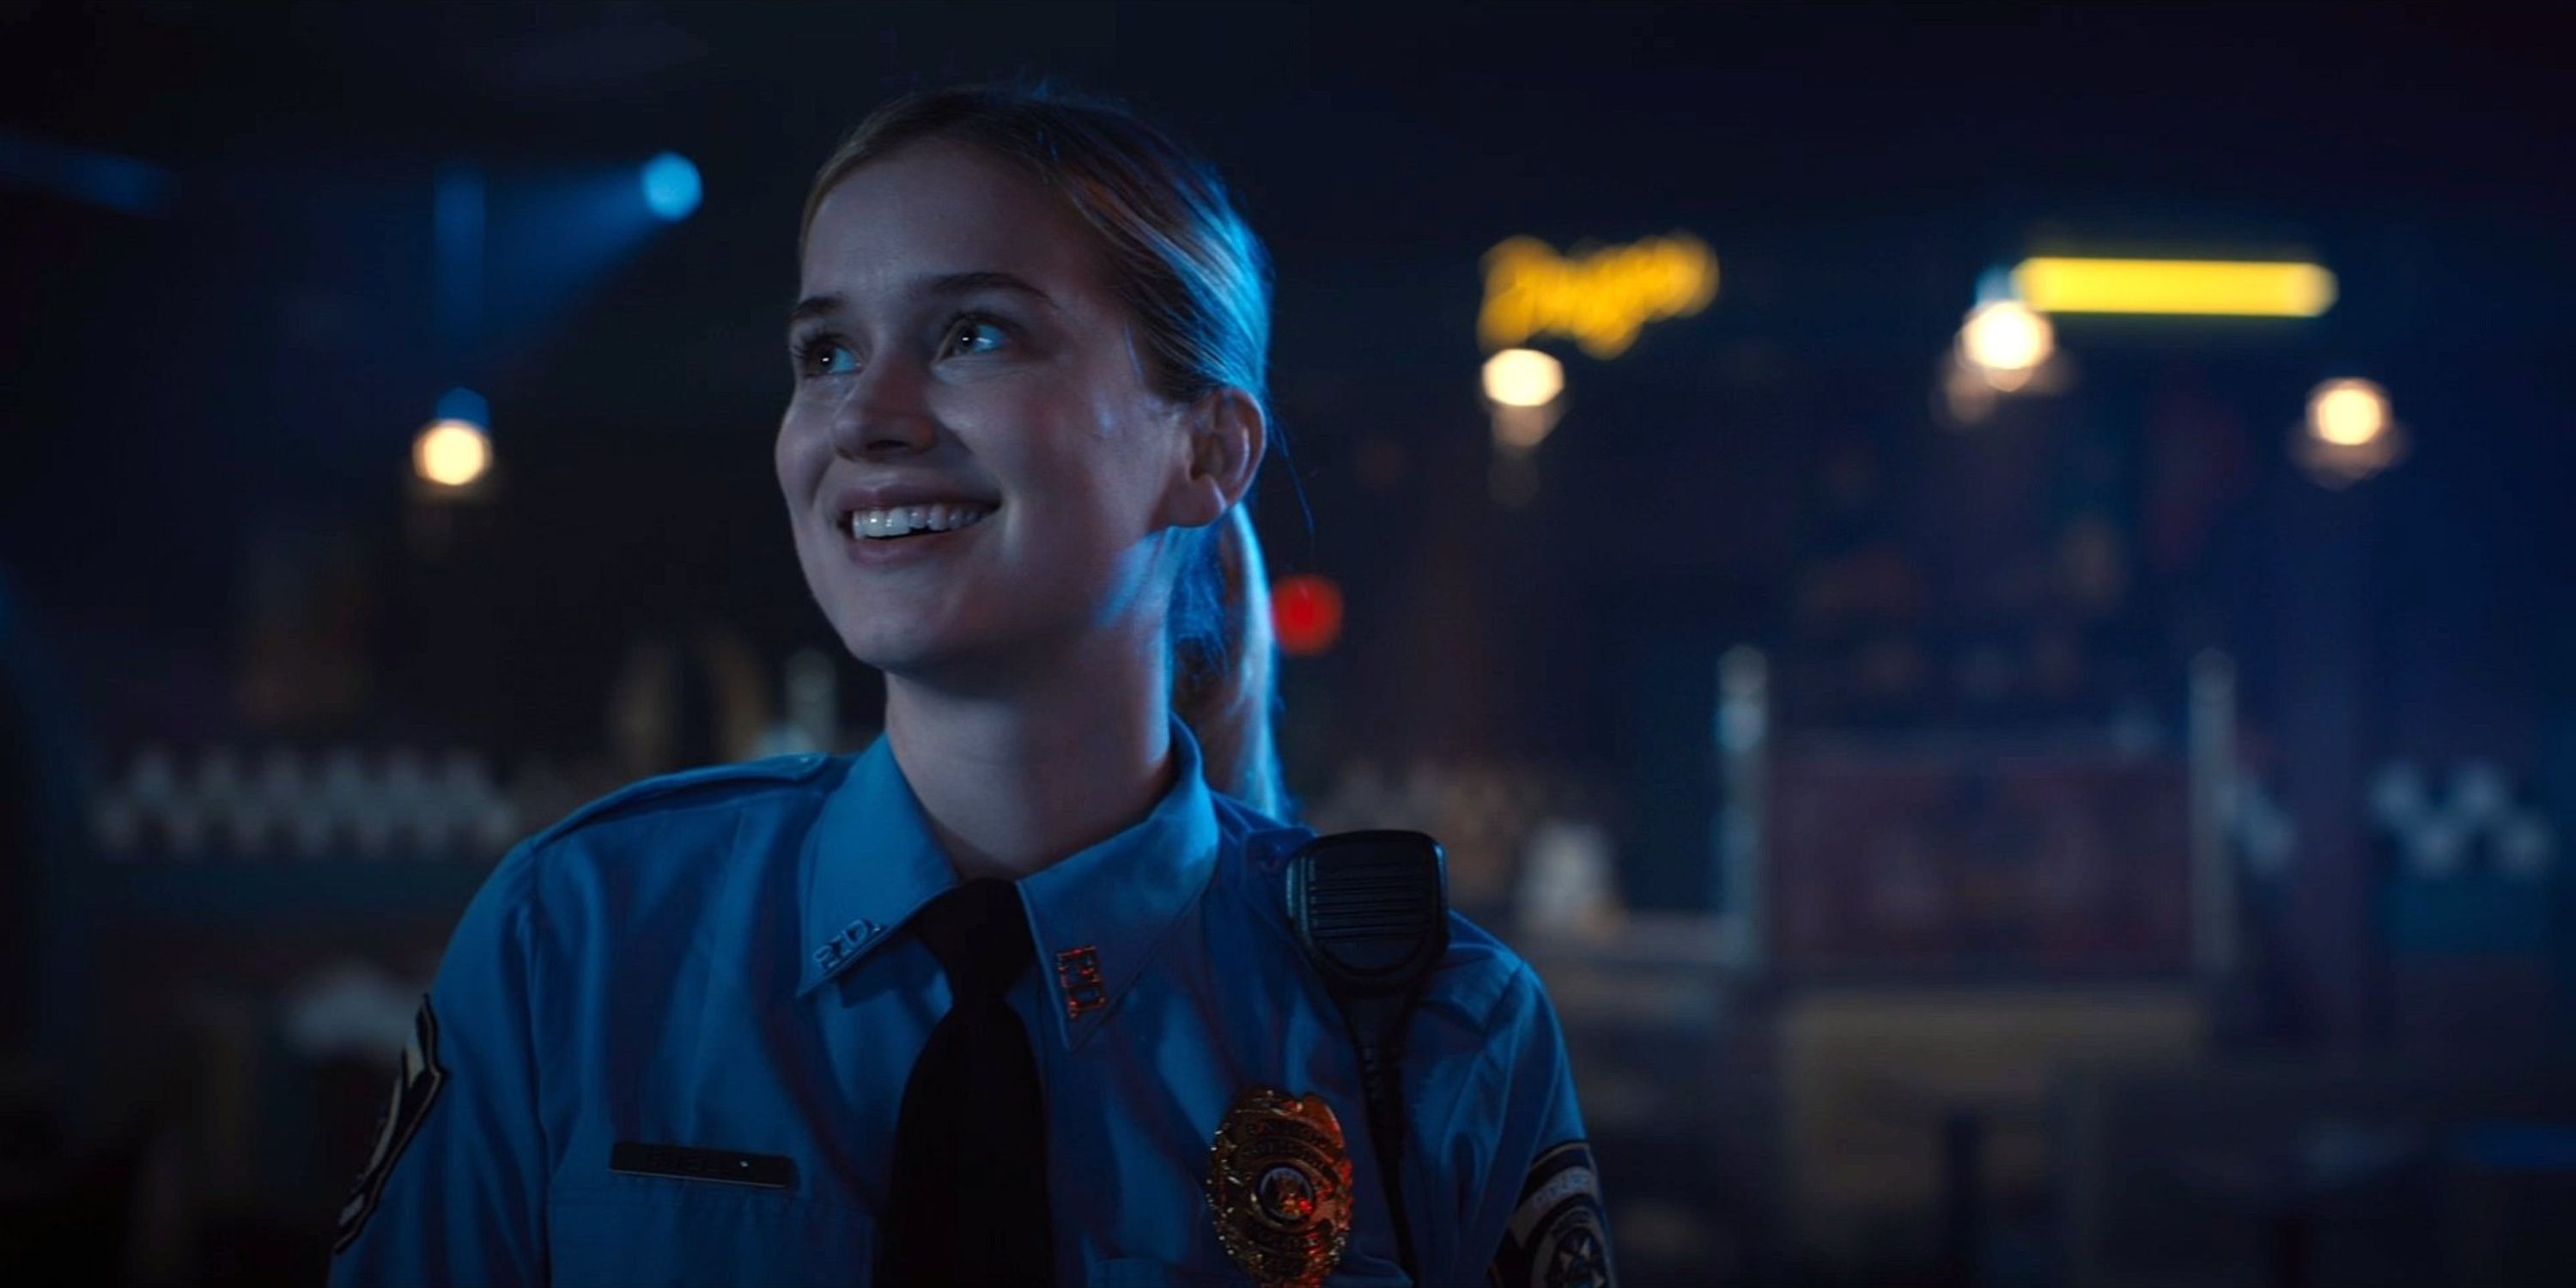 vanessa in her police uniform